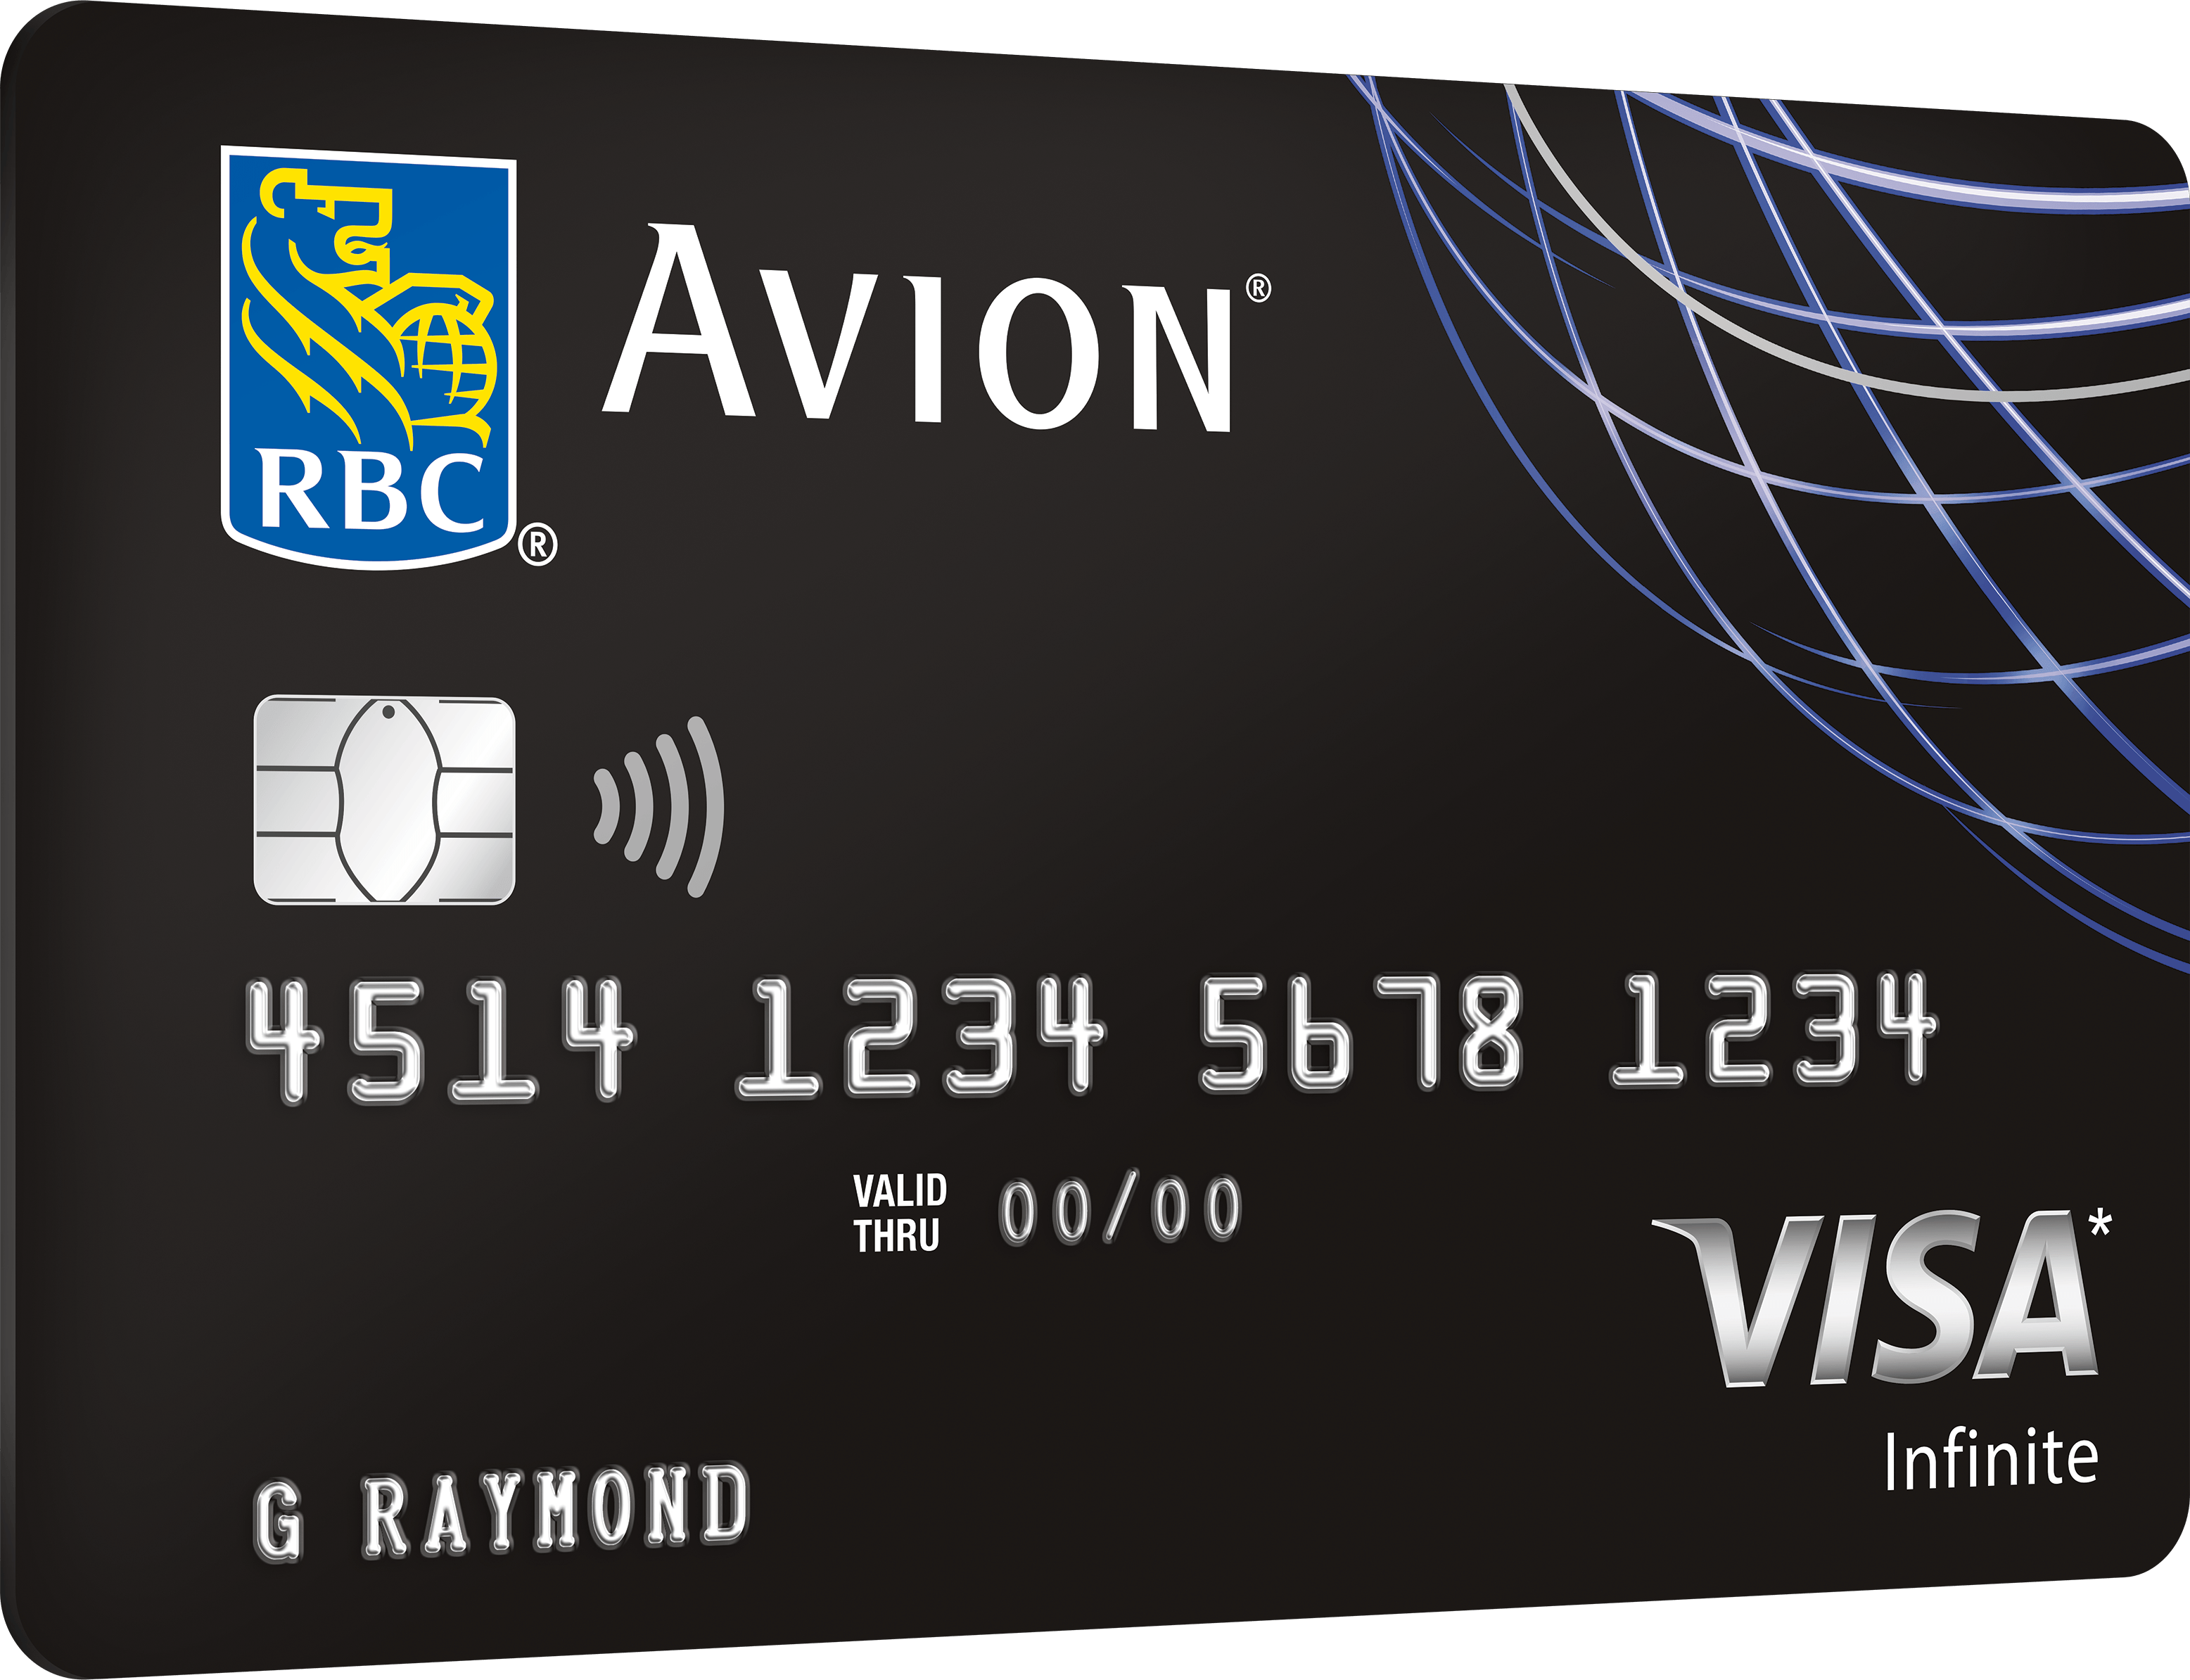 RBC Avion Visa Card